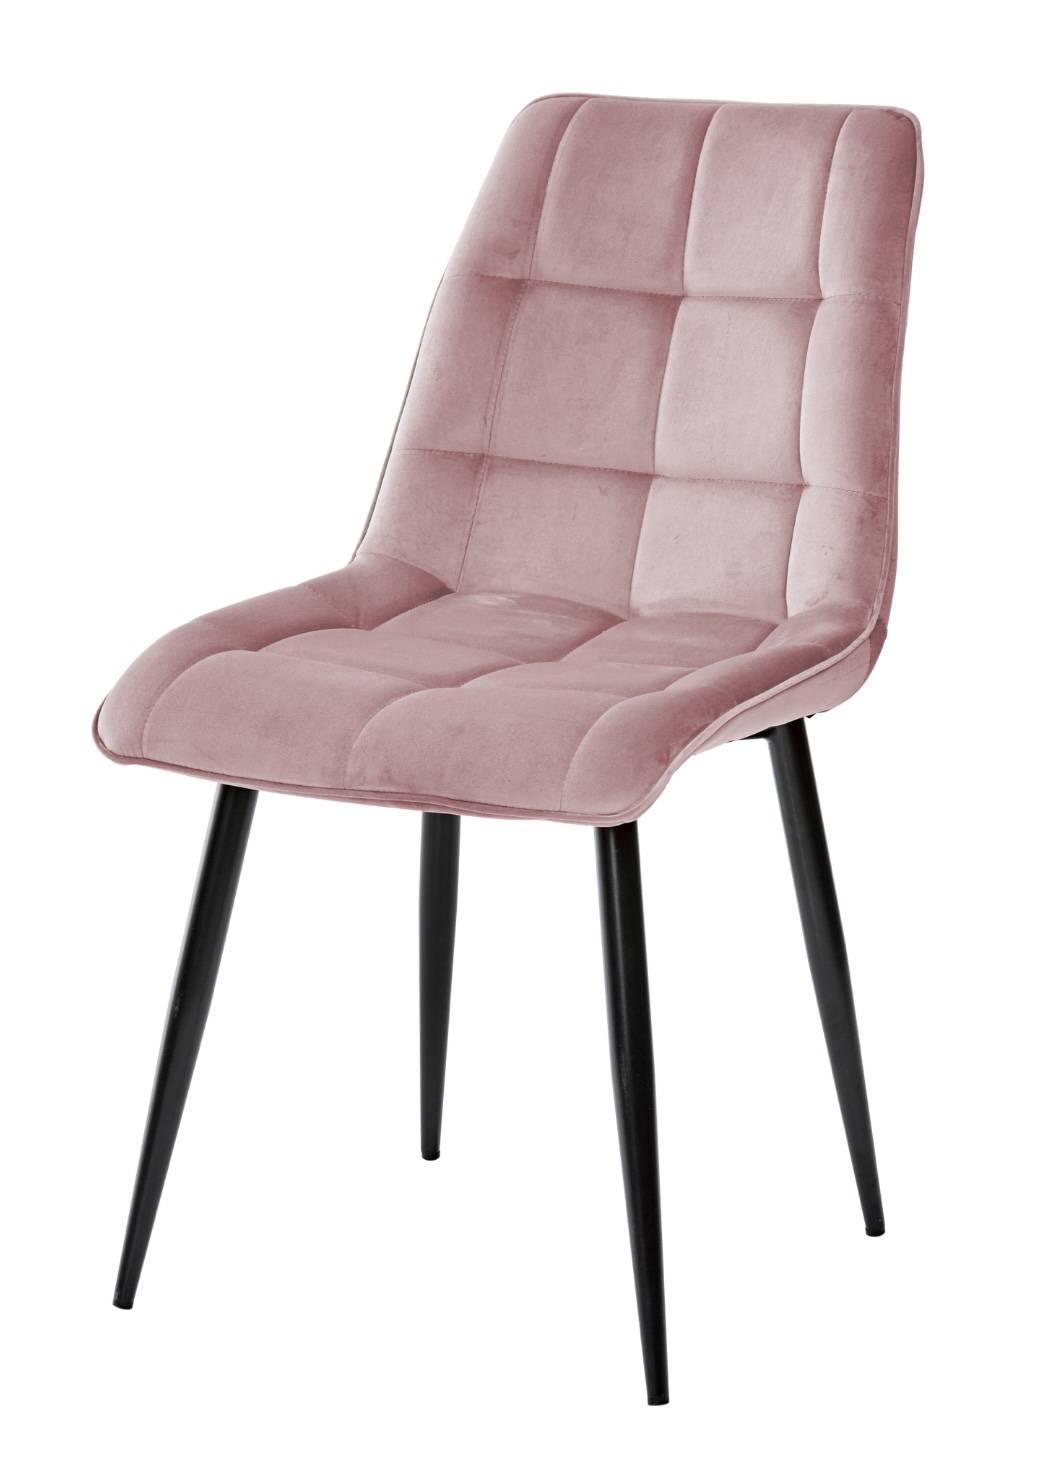 Купить розовый стул chic в Raroom